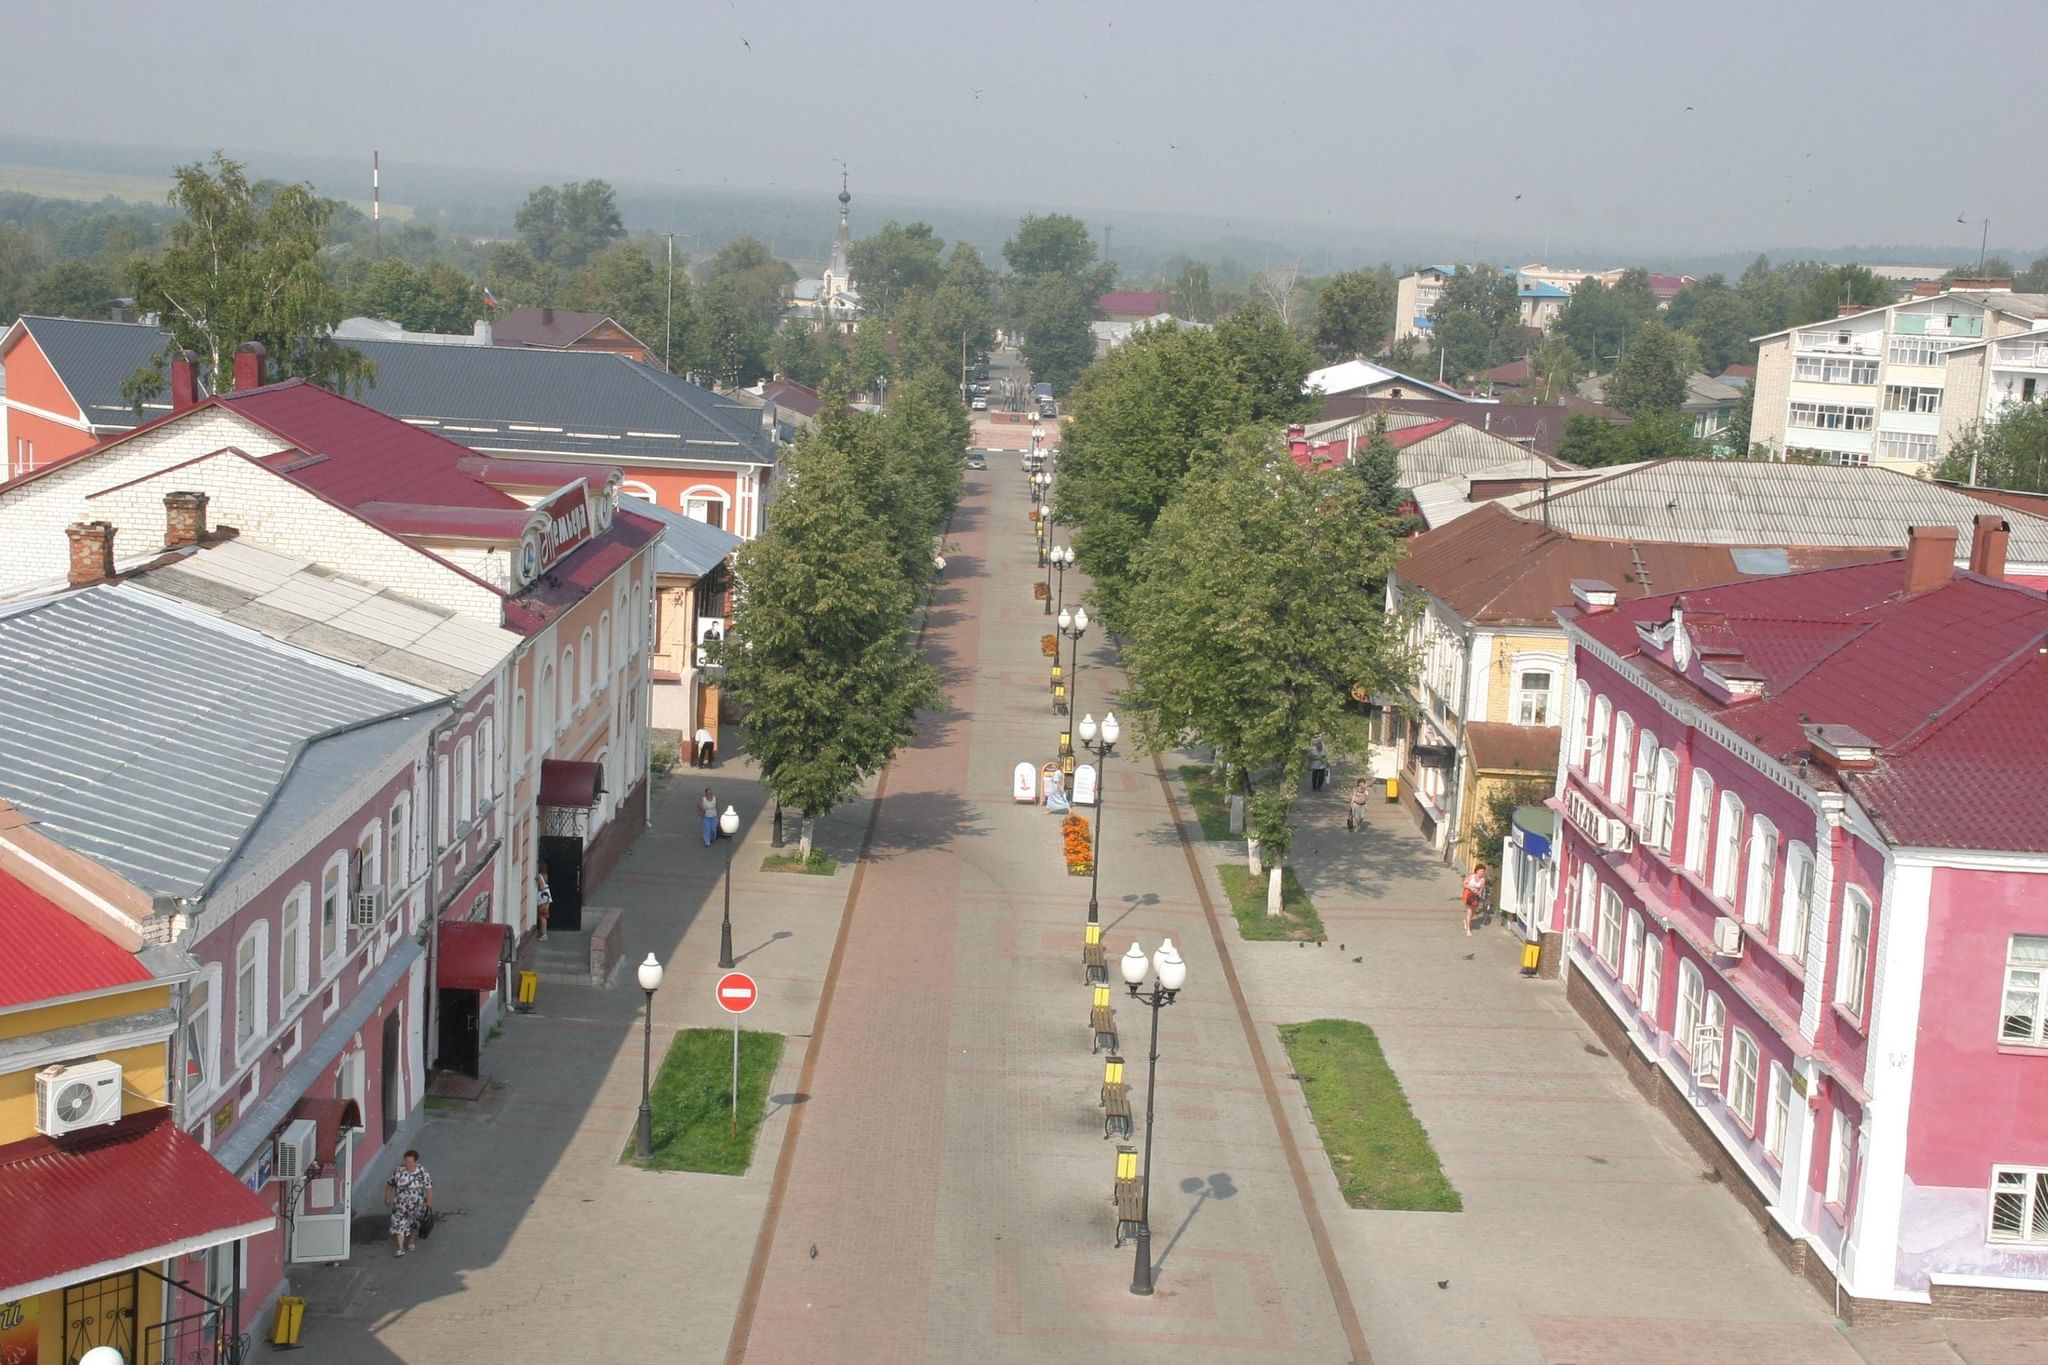 Город семенов нижегородской области фото